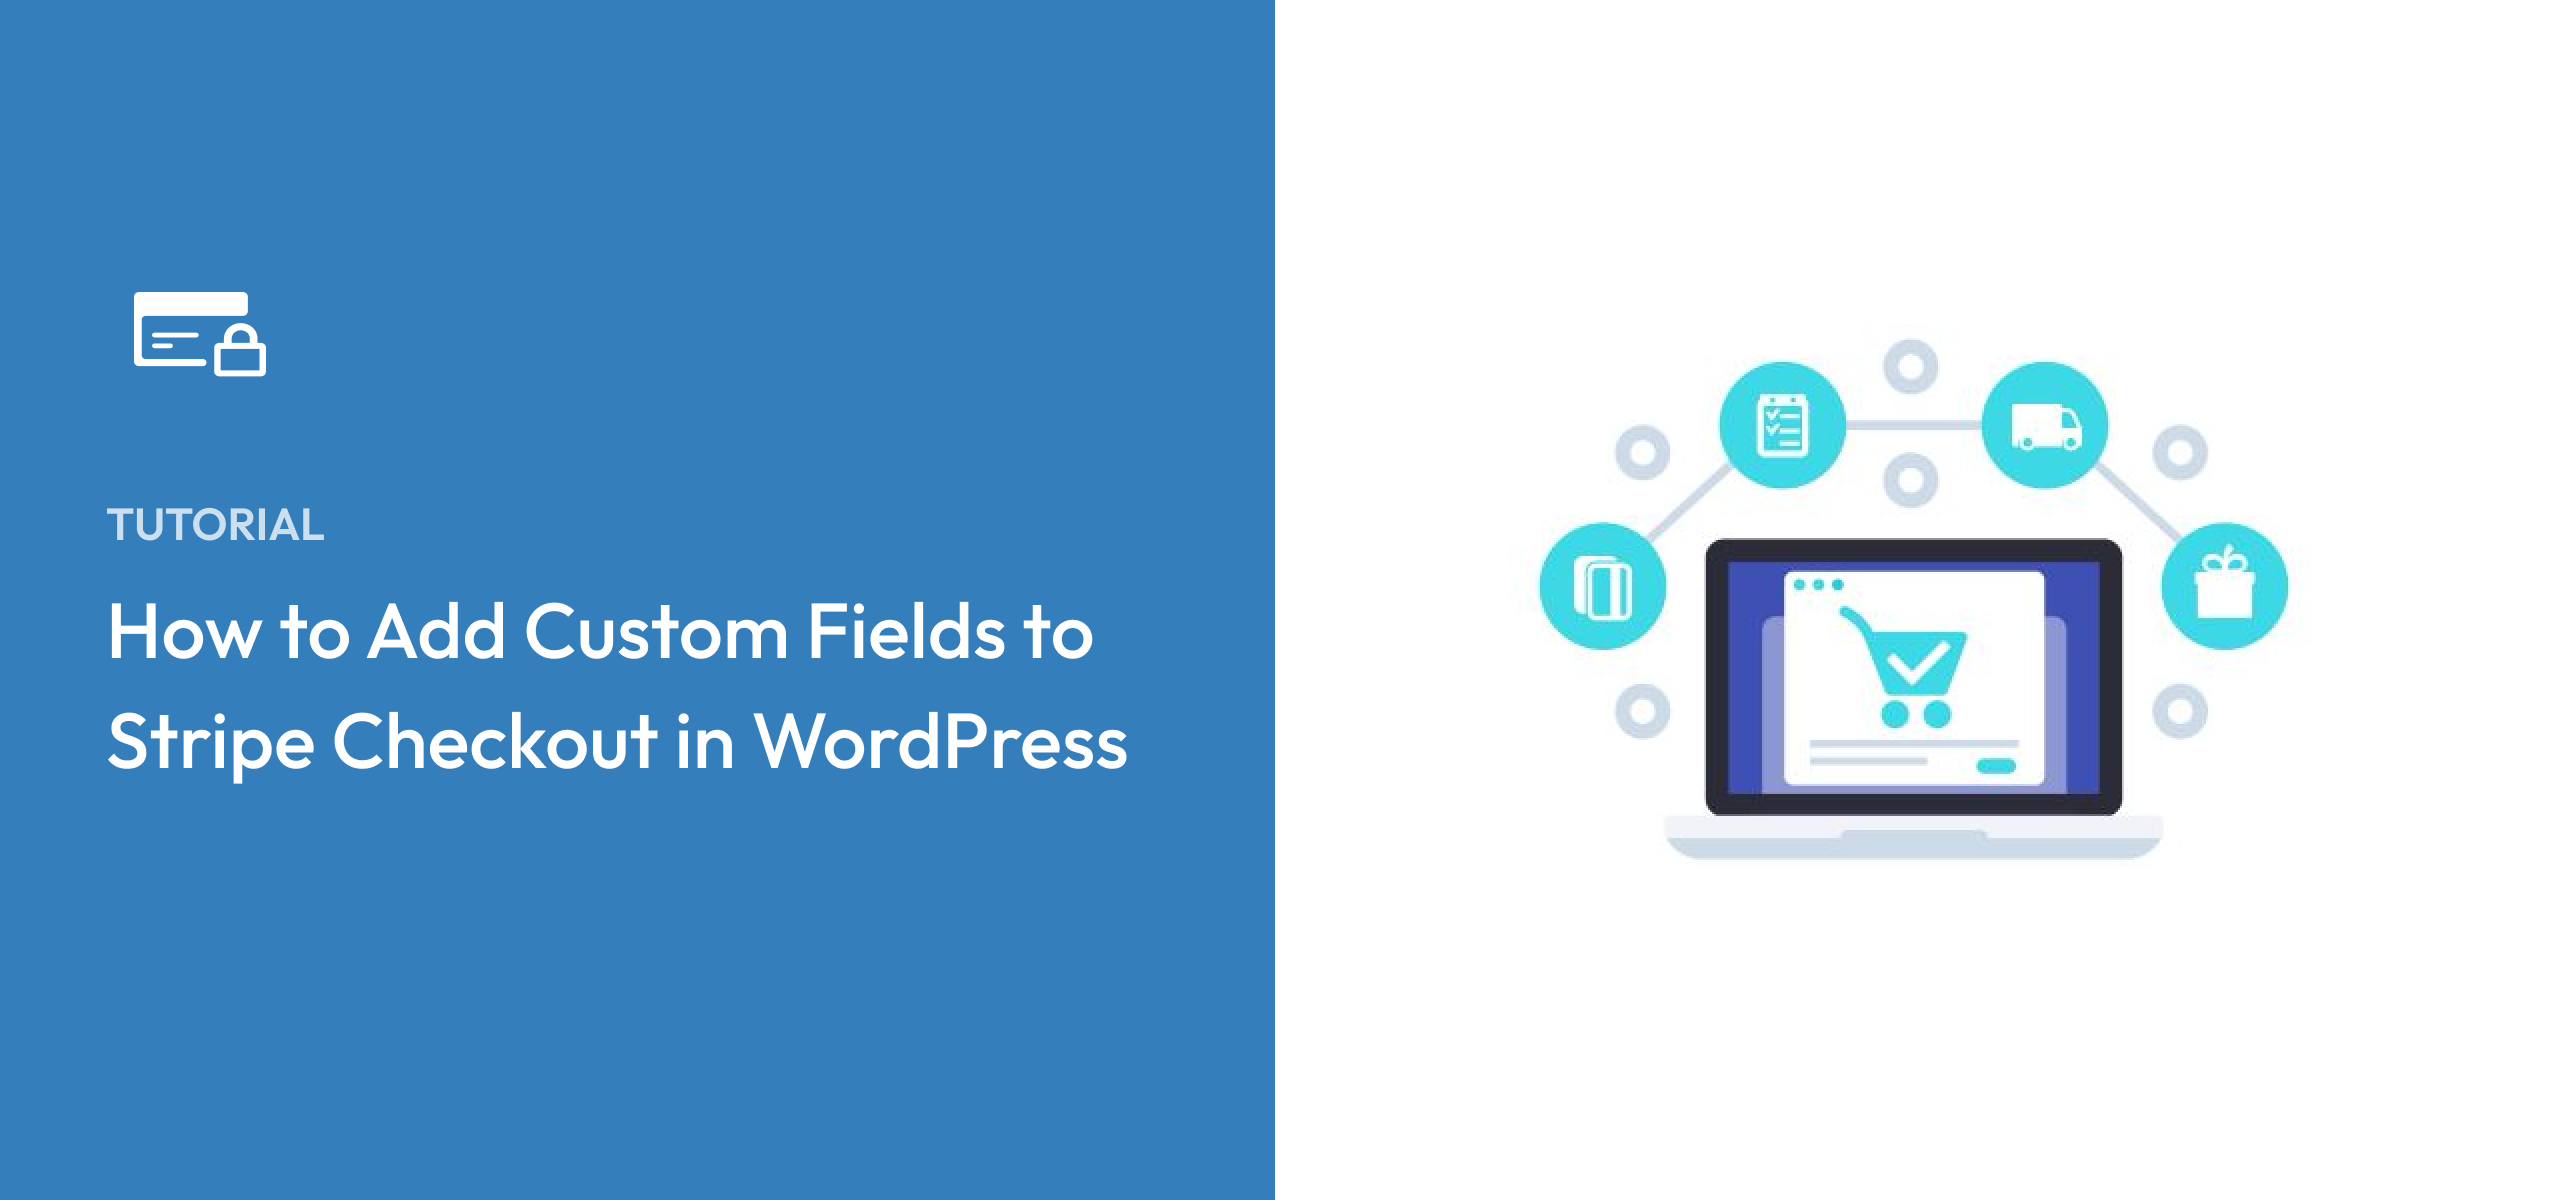 How to Add Custom Fields to Stripe Checkout in WordPress